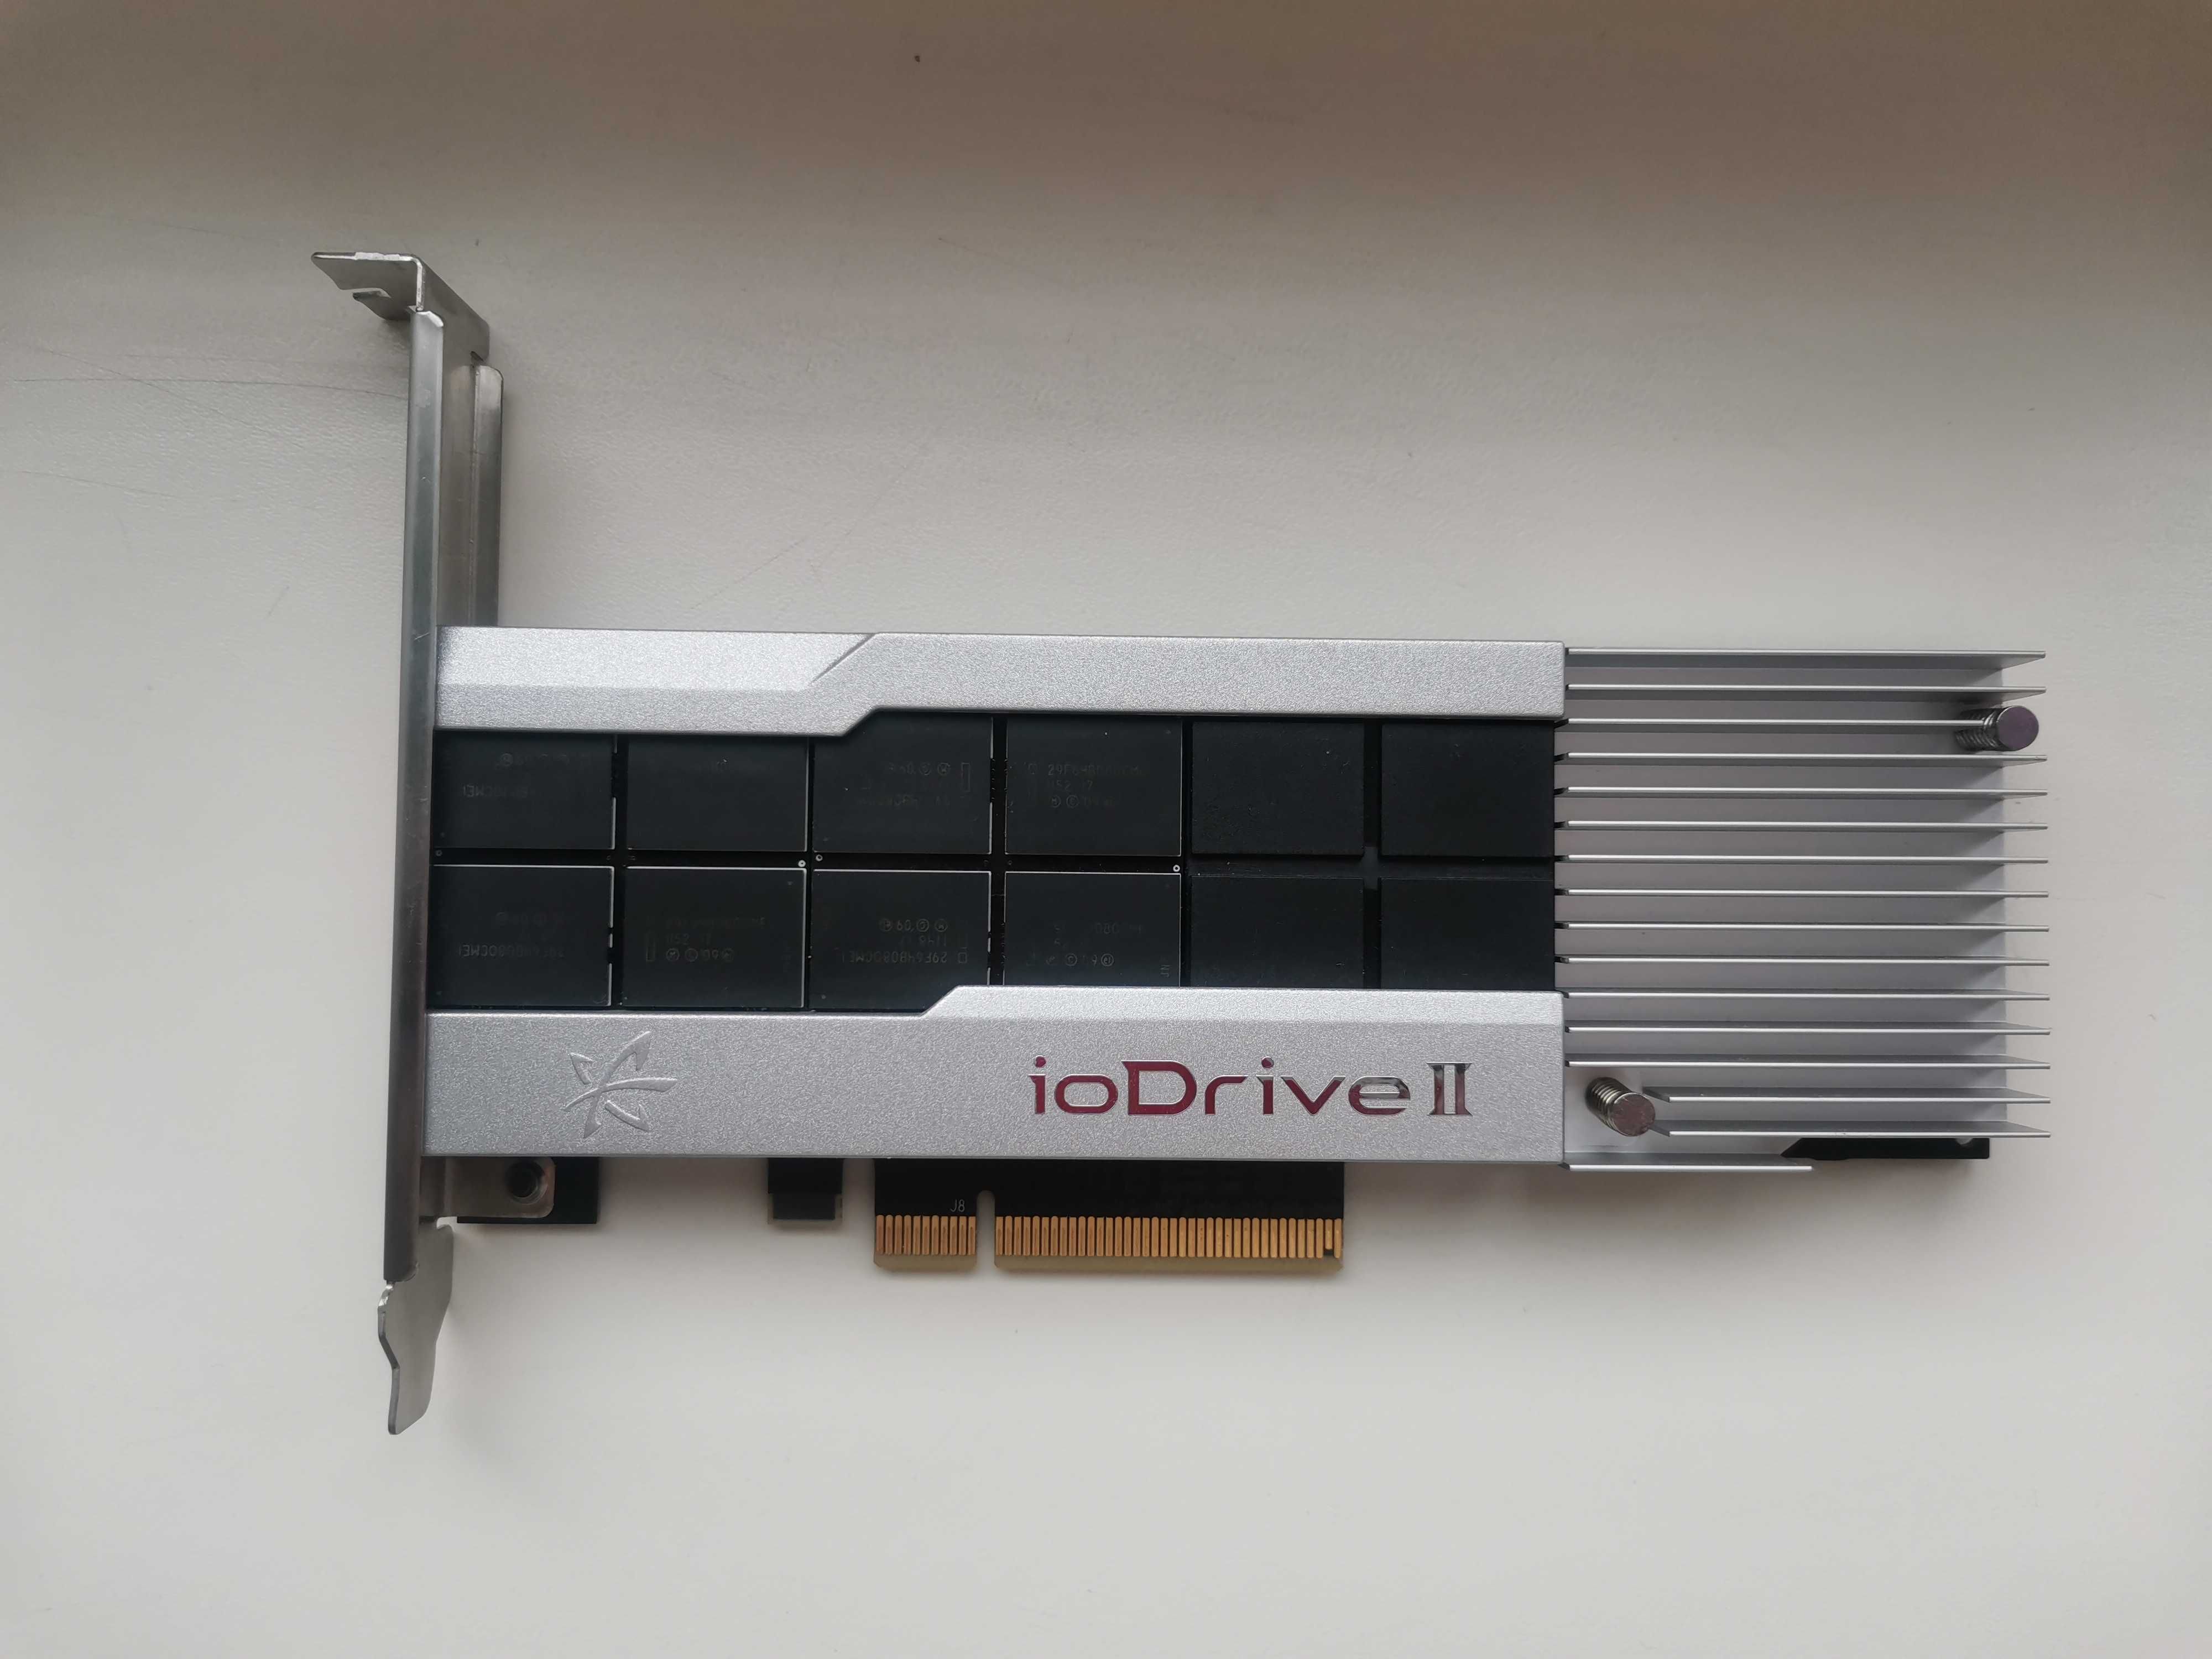 SSD HP 785GB MLC PCI-E ioDrive2